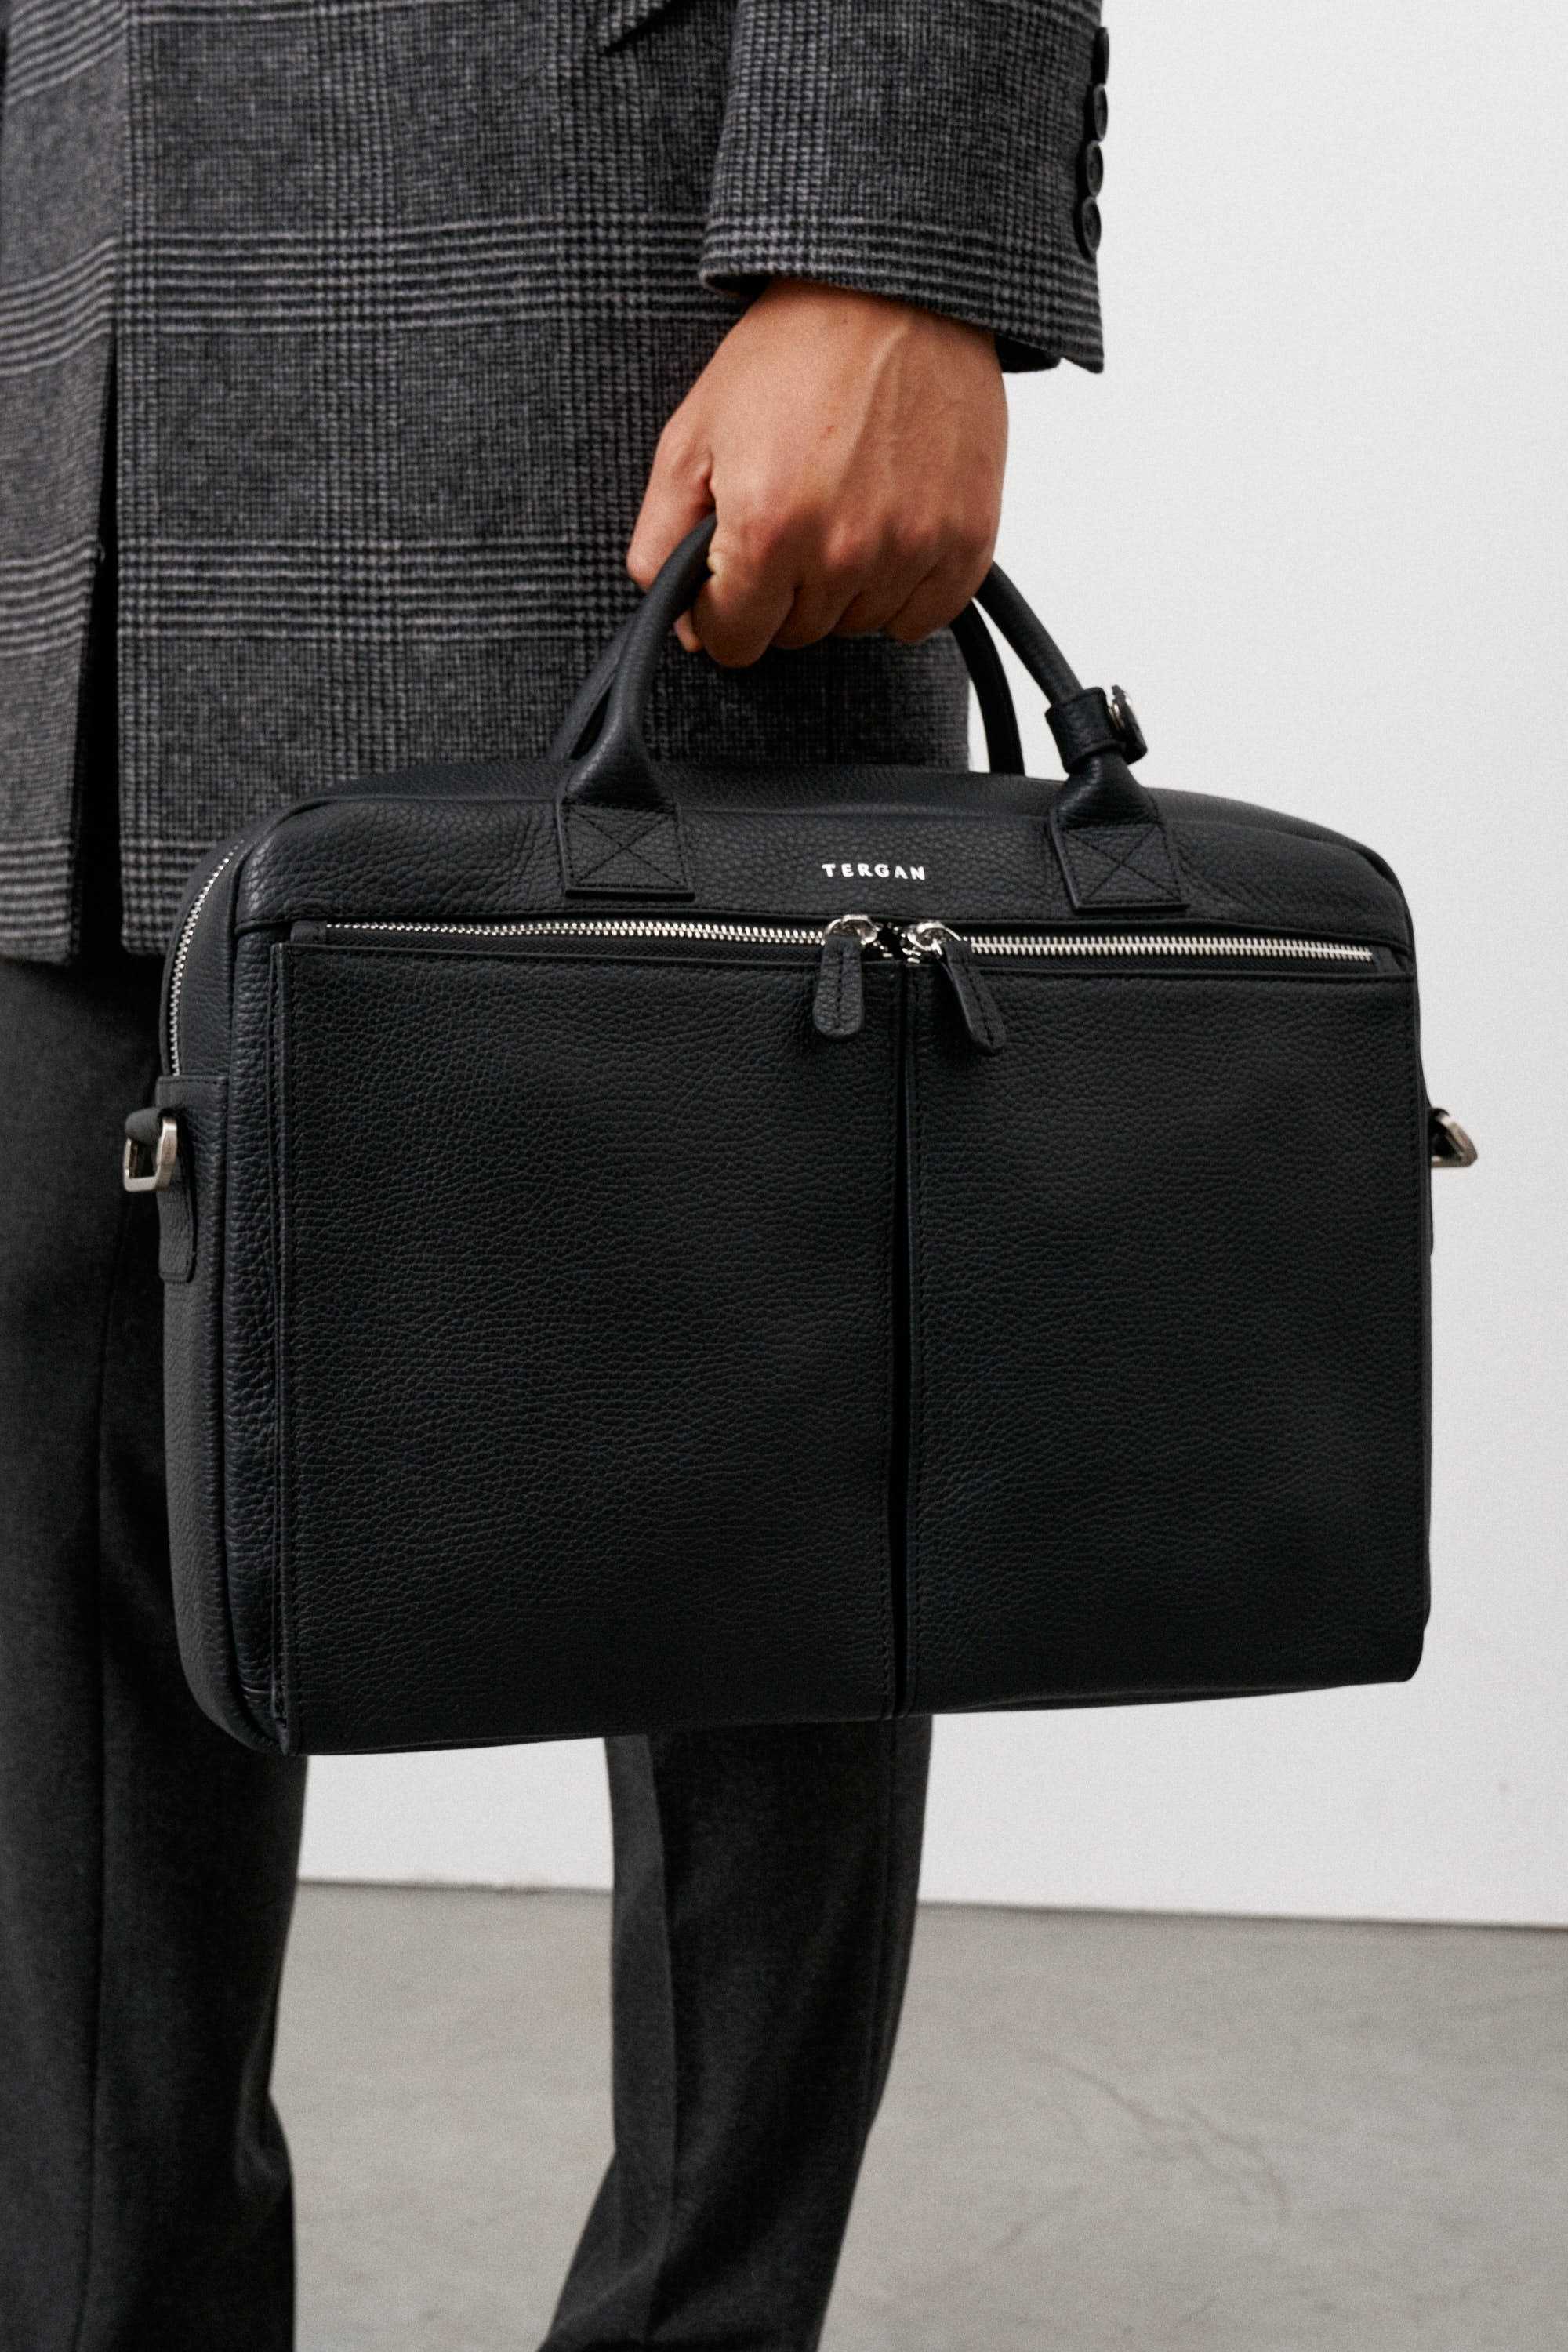 Портфель мужской черный, бескаркасный, одно отделение, спереди два кармана на молнии